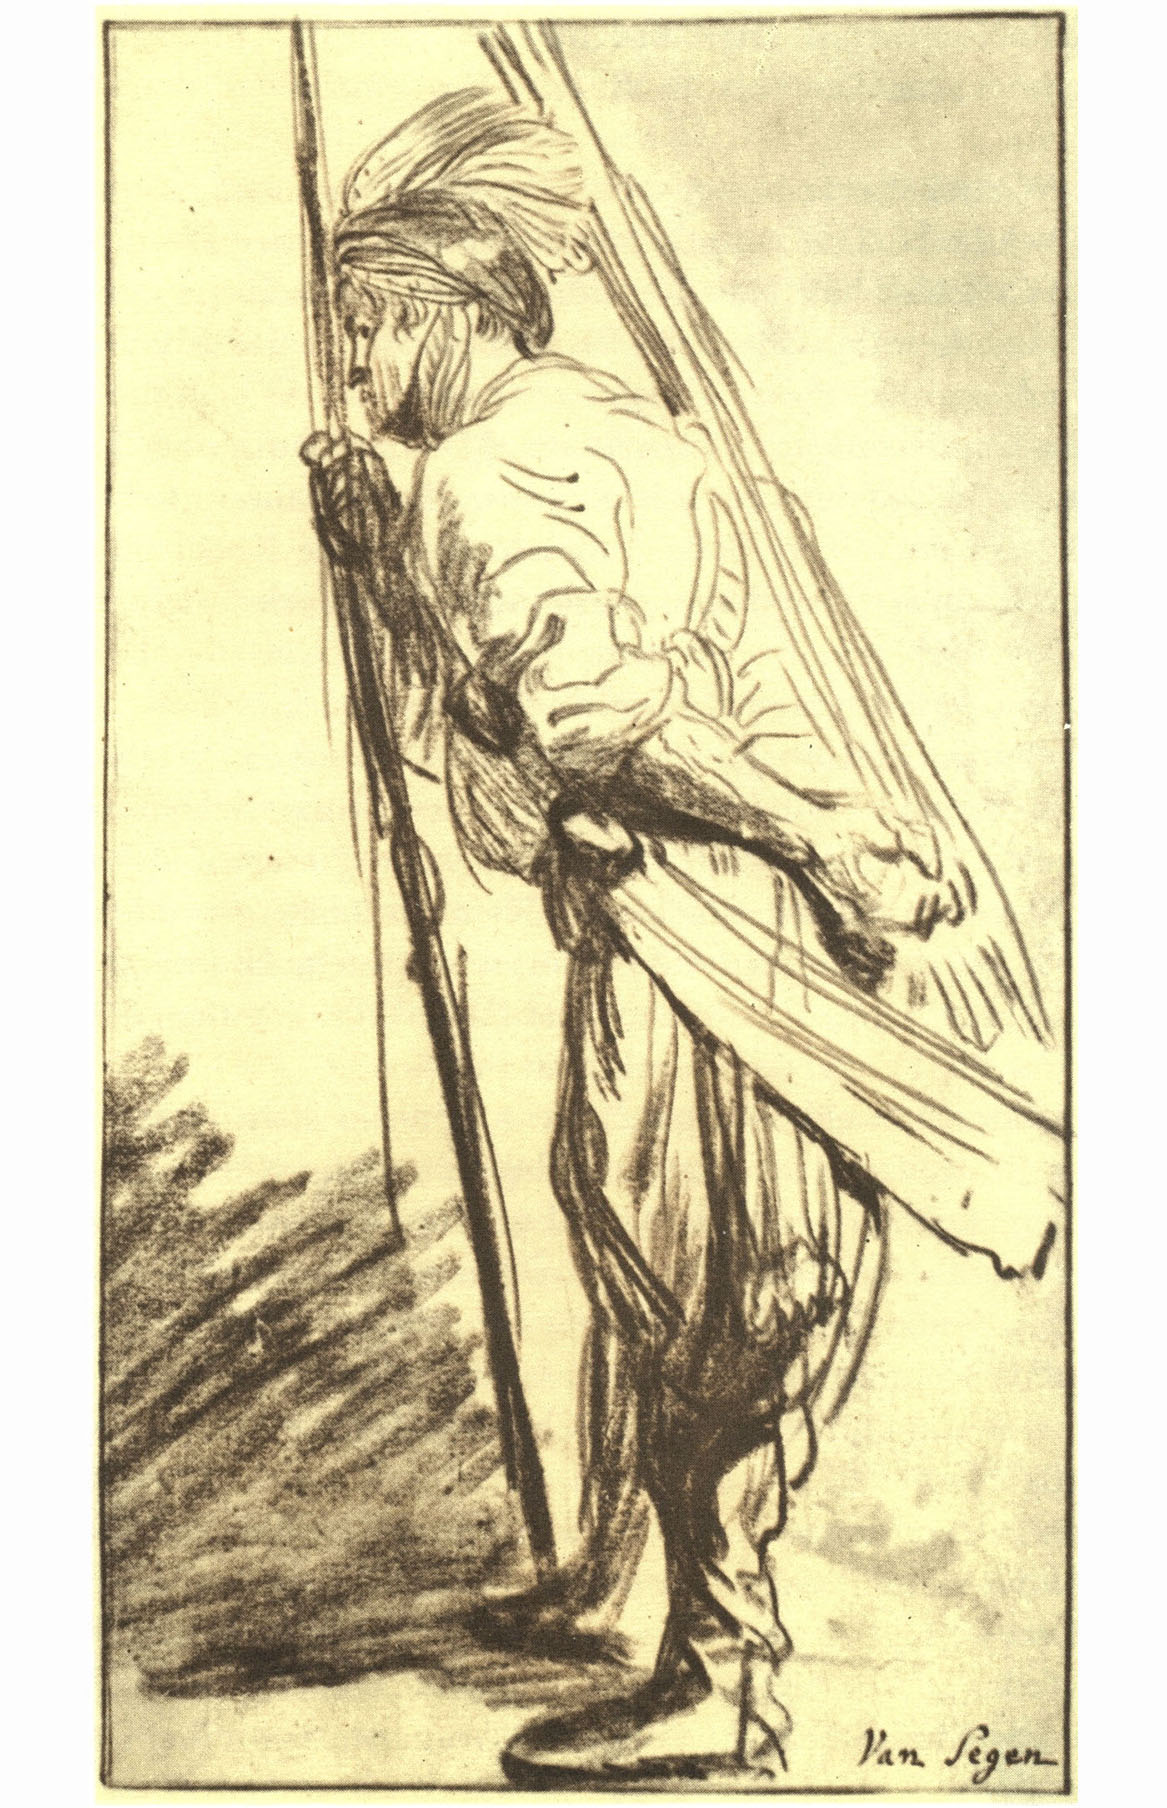 Рембрандт Харменс ван Рейн. "Стоящий человек со стрелой и луком". Государственные художественные собрания, Дрезден.